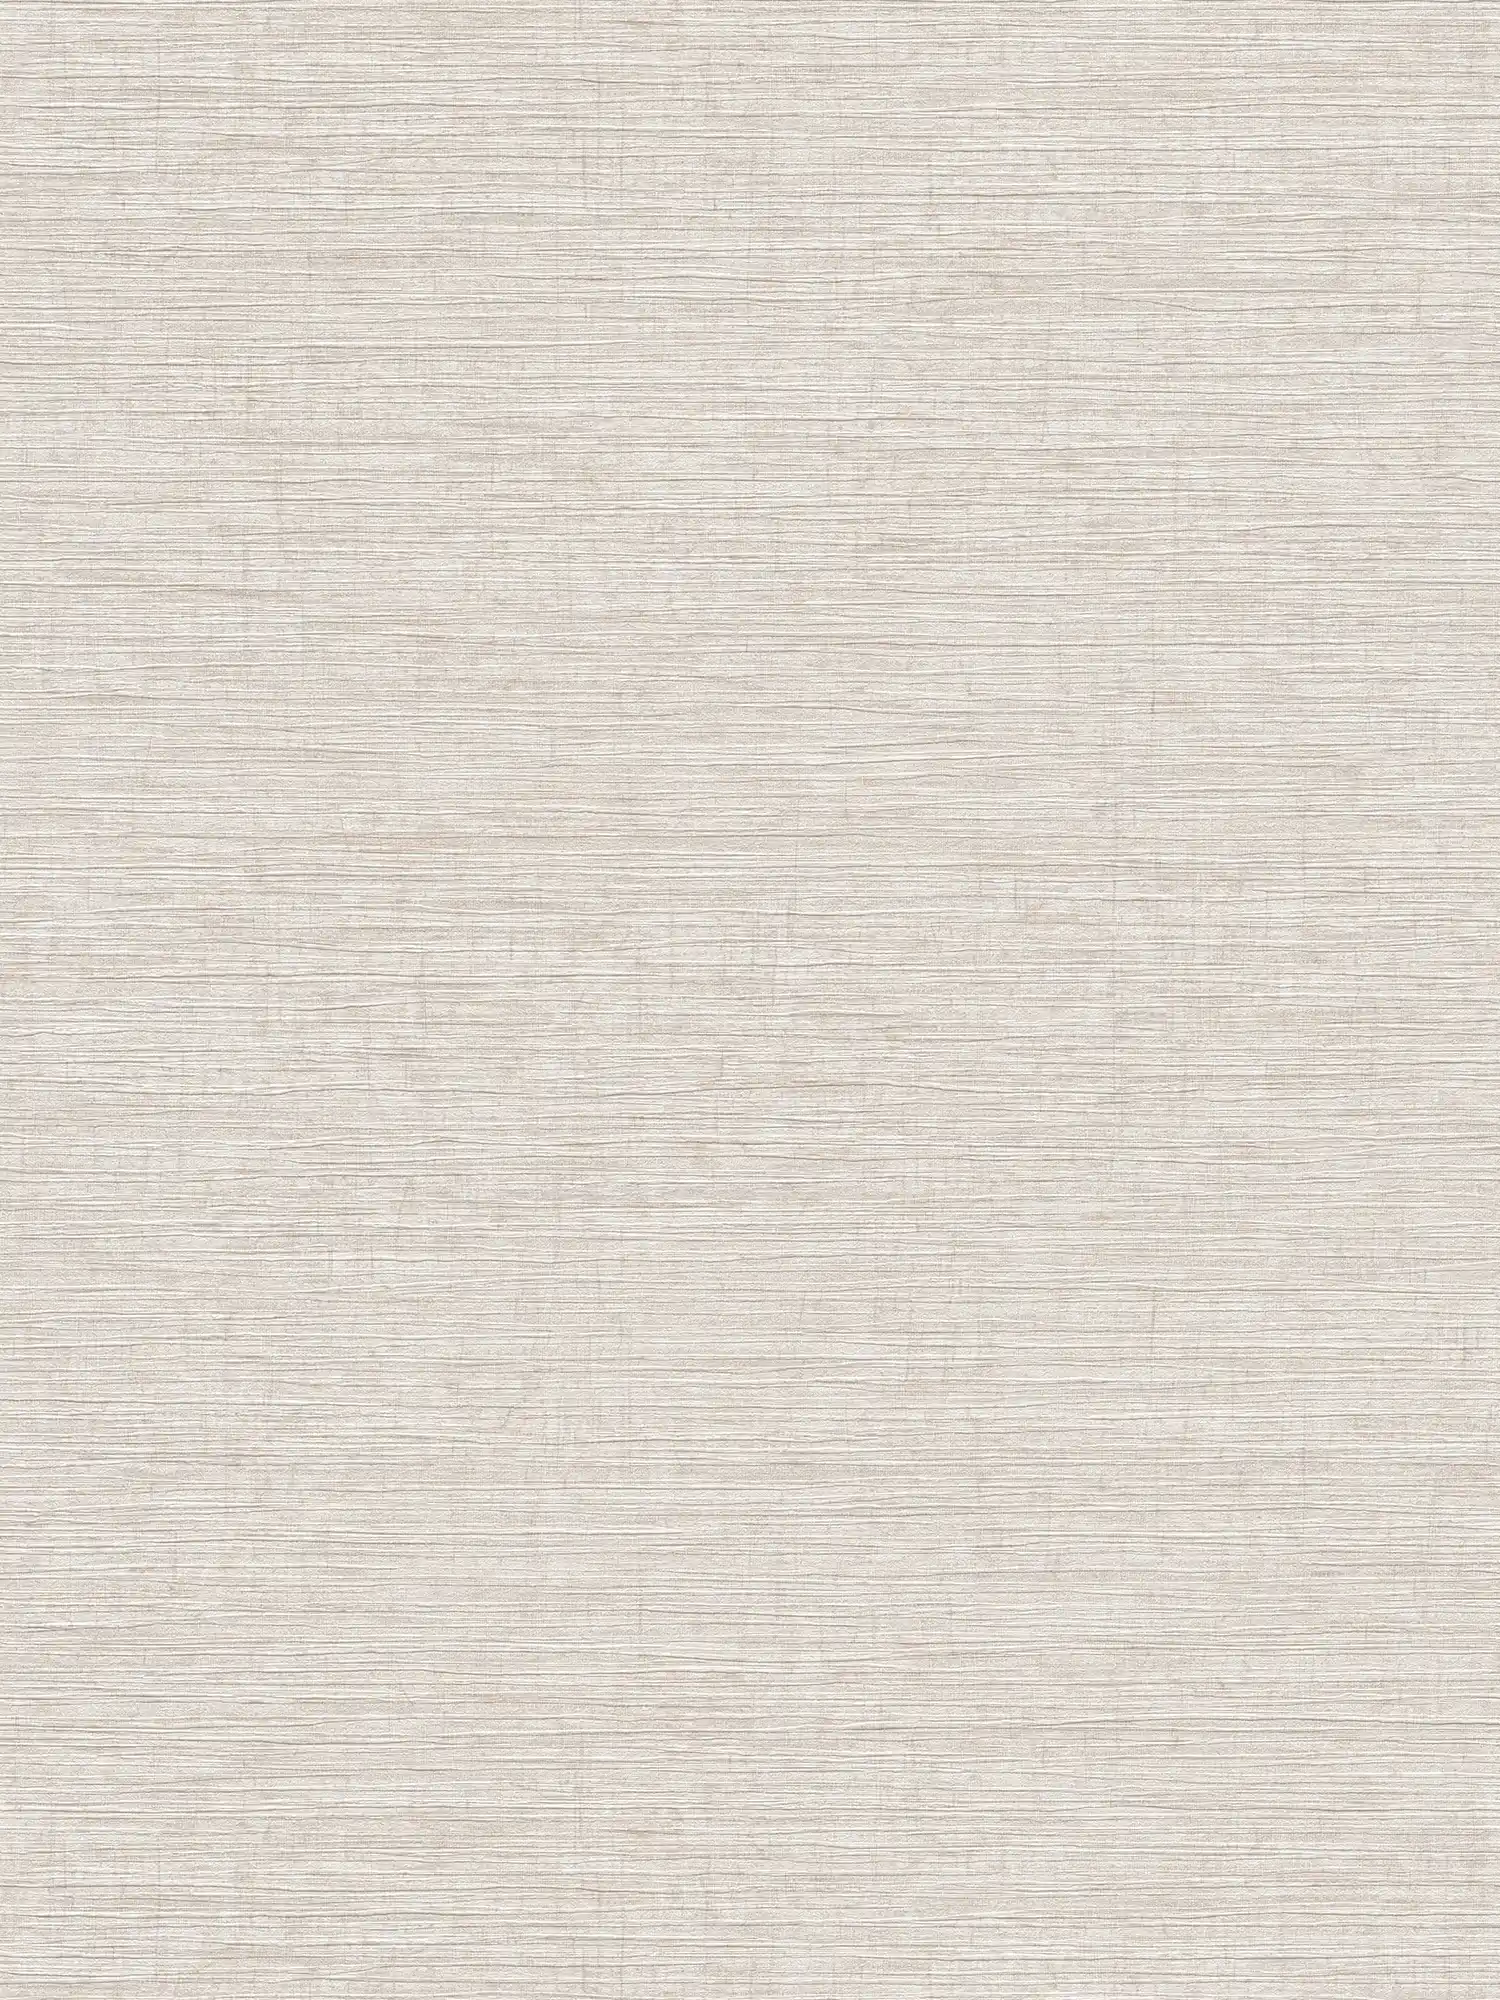 Vliesbehang gevlekt met textiel reliëf patroon - beige, bruin, grijs
